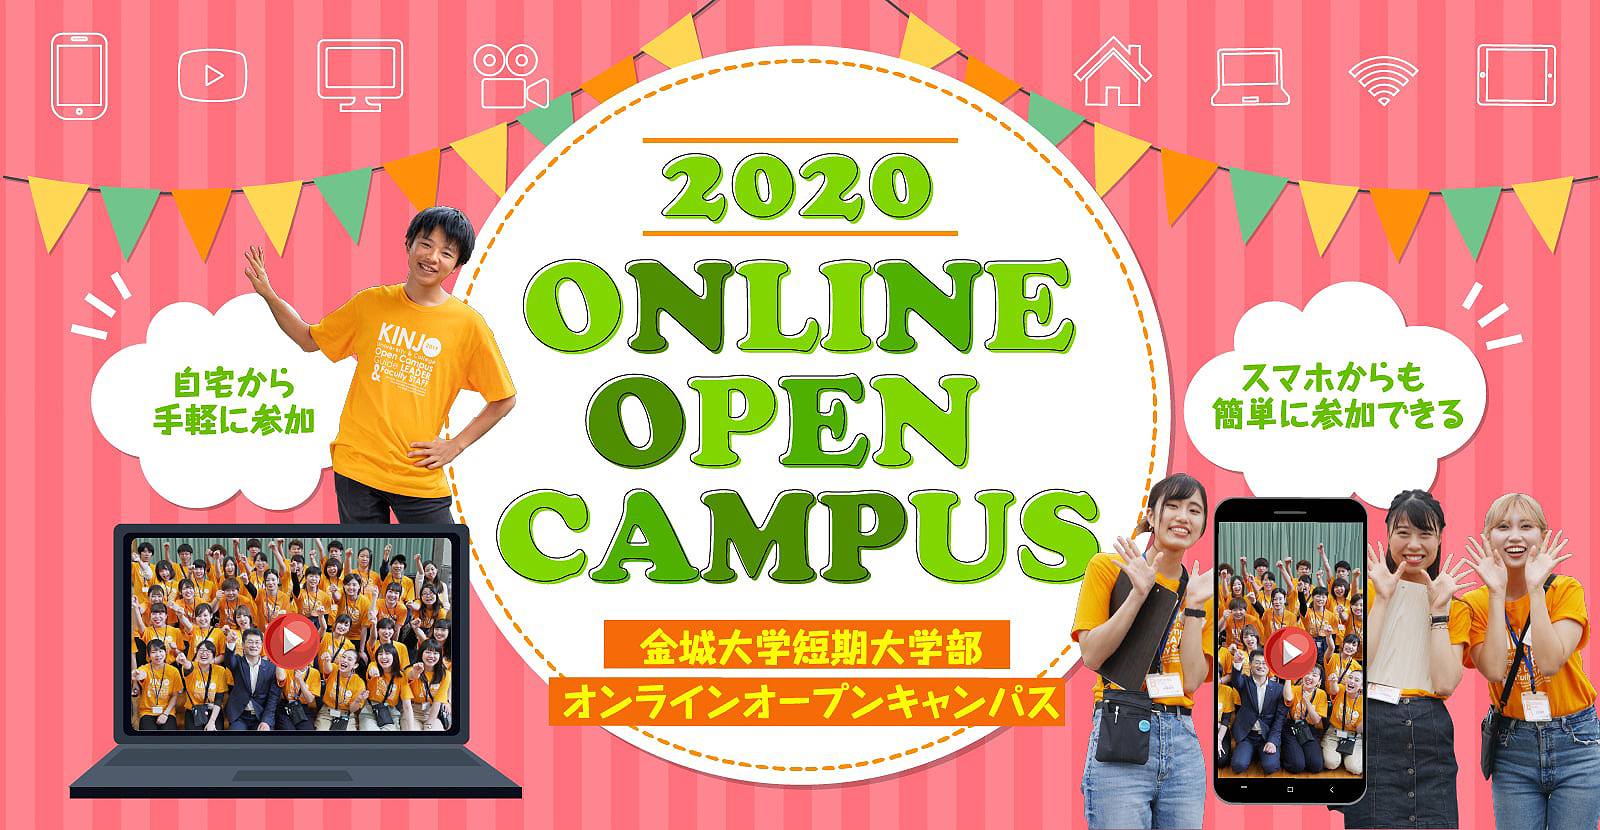 金城大学短期大学部 オンラインオープンキャンパス